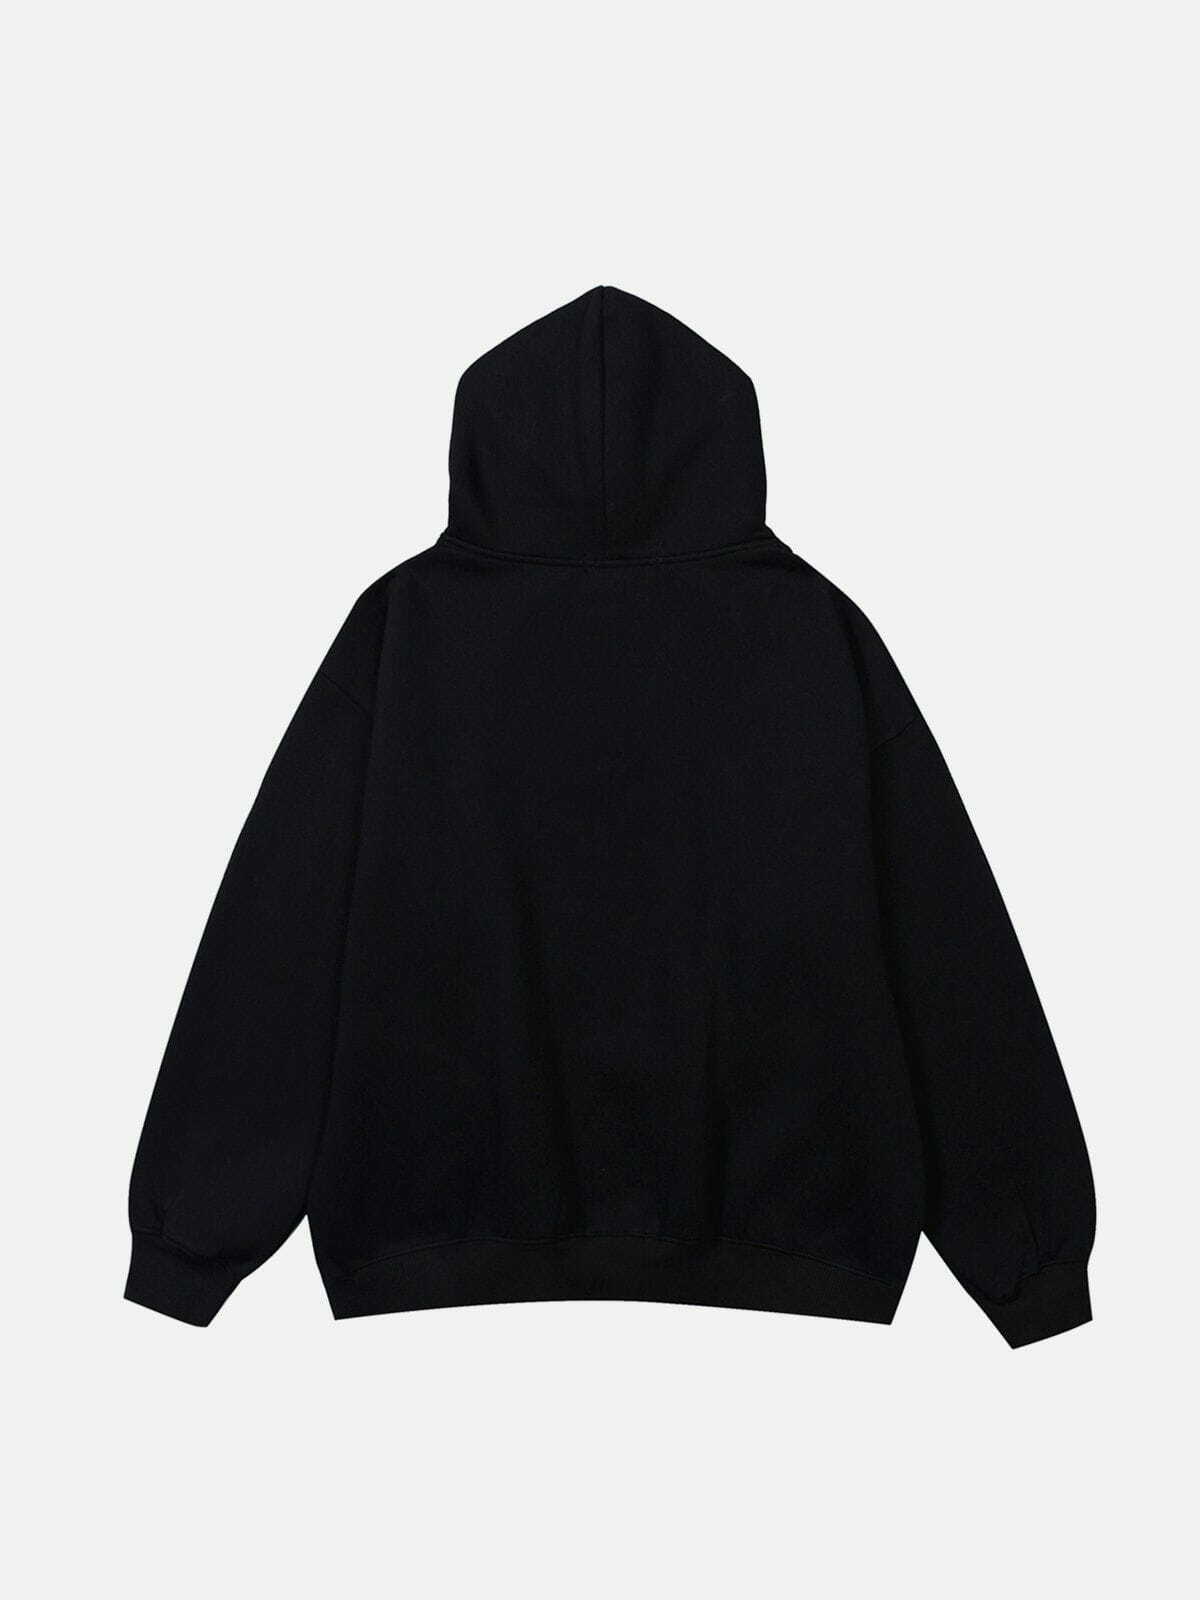 cosmic print hoodie retro y2k streetwear essential 4808